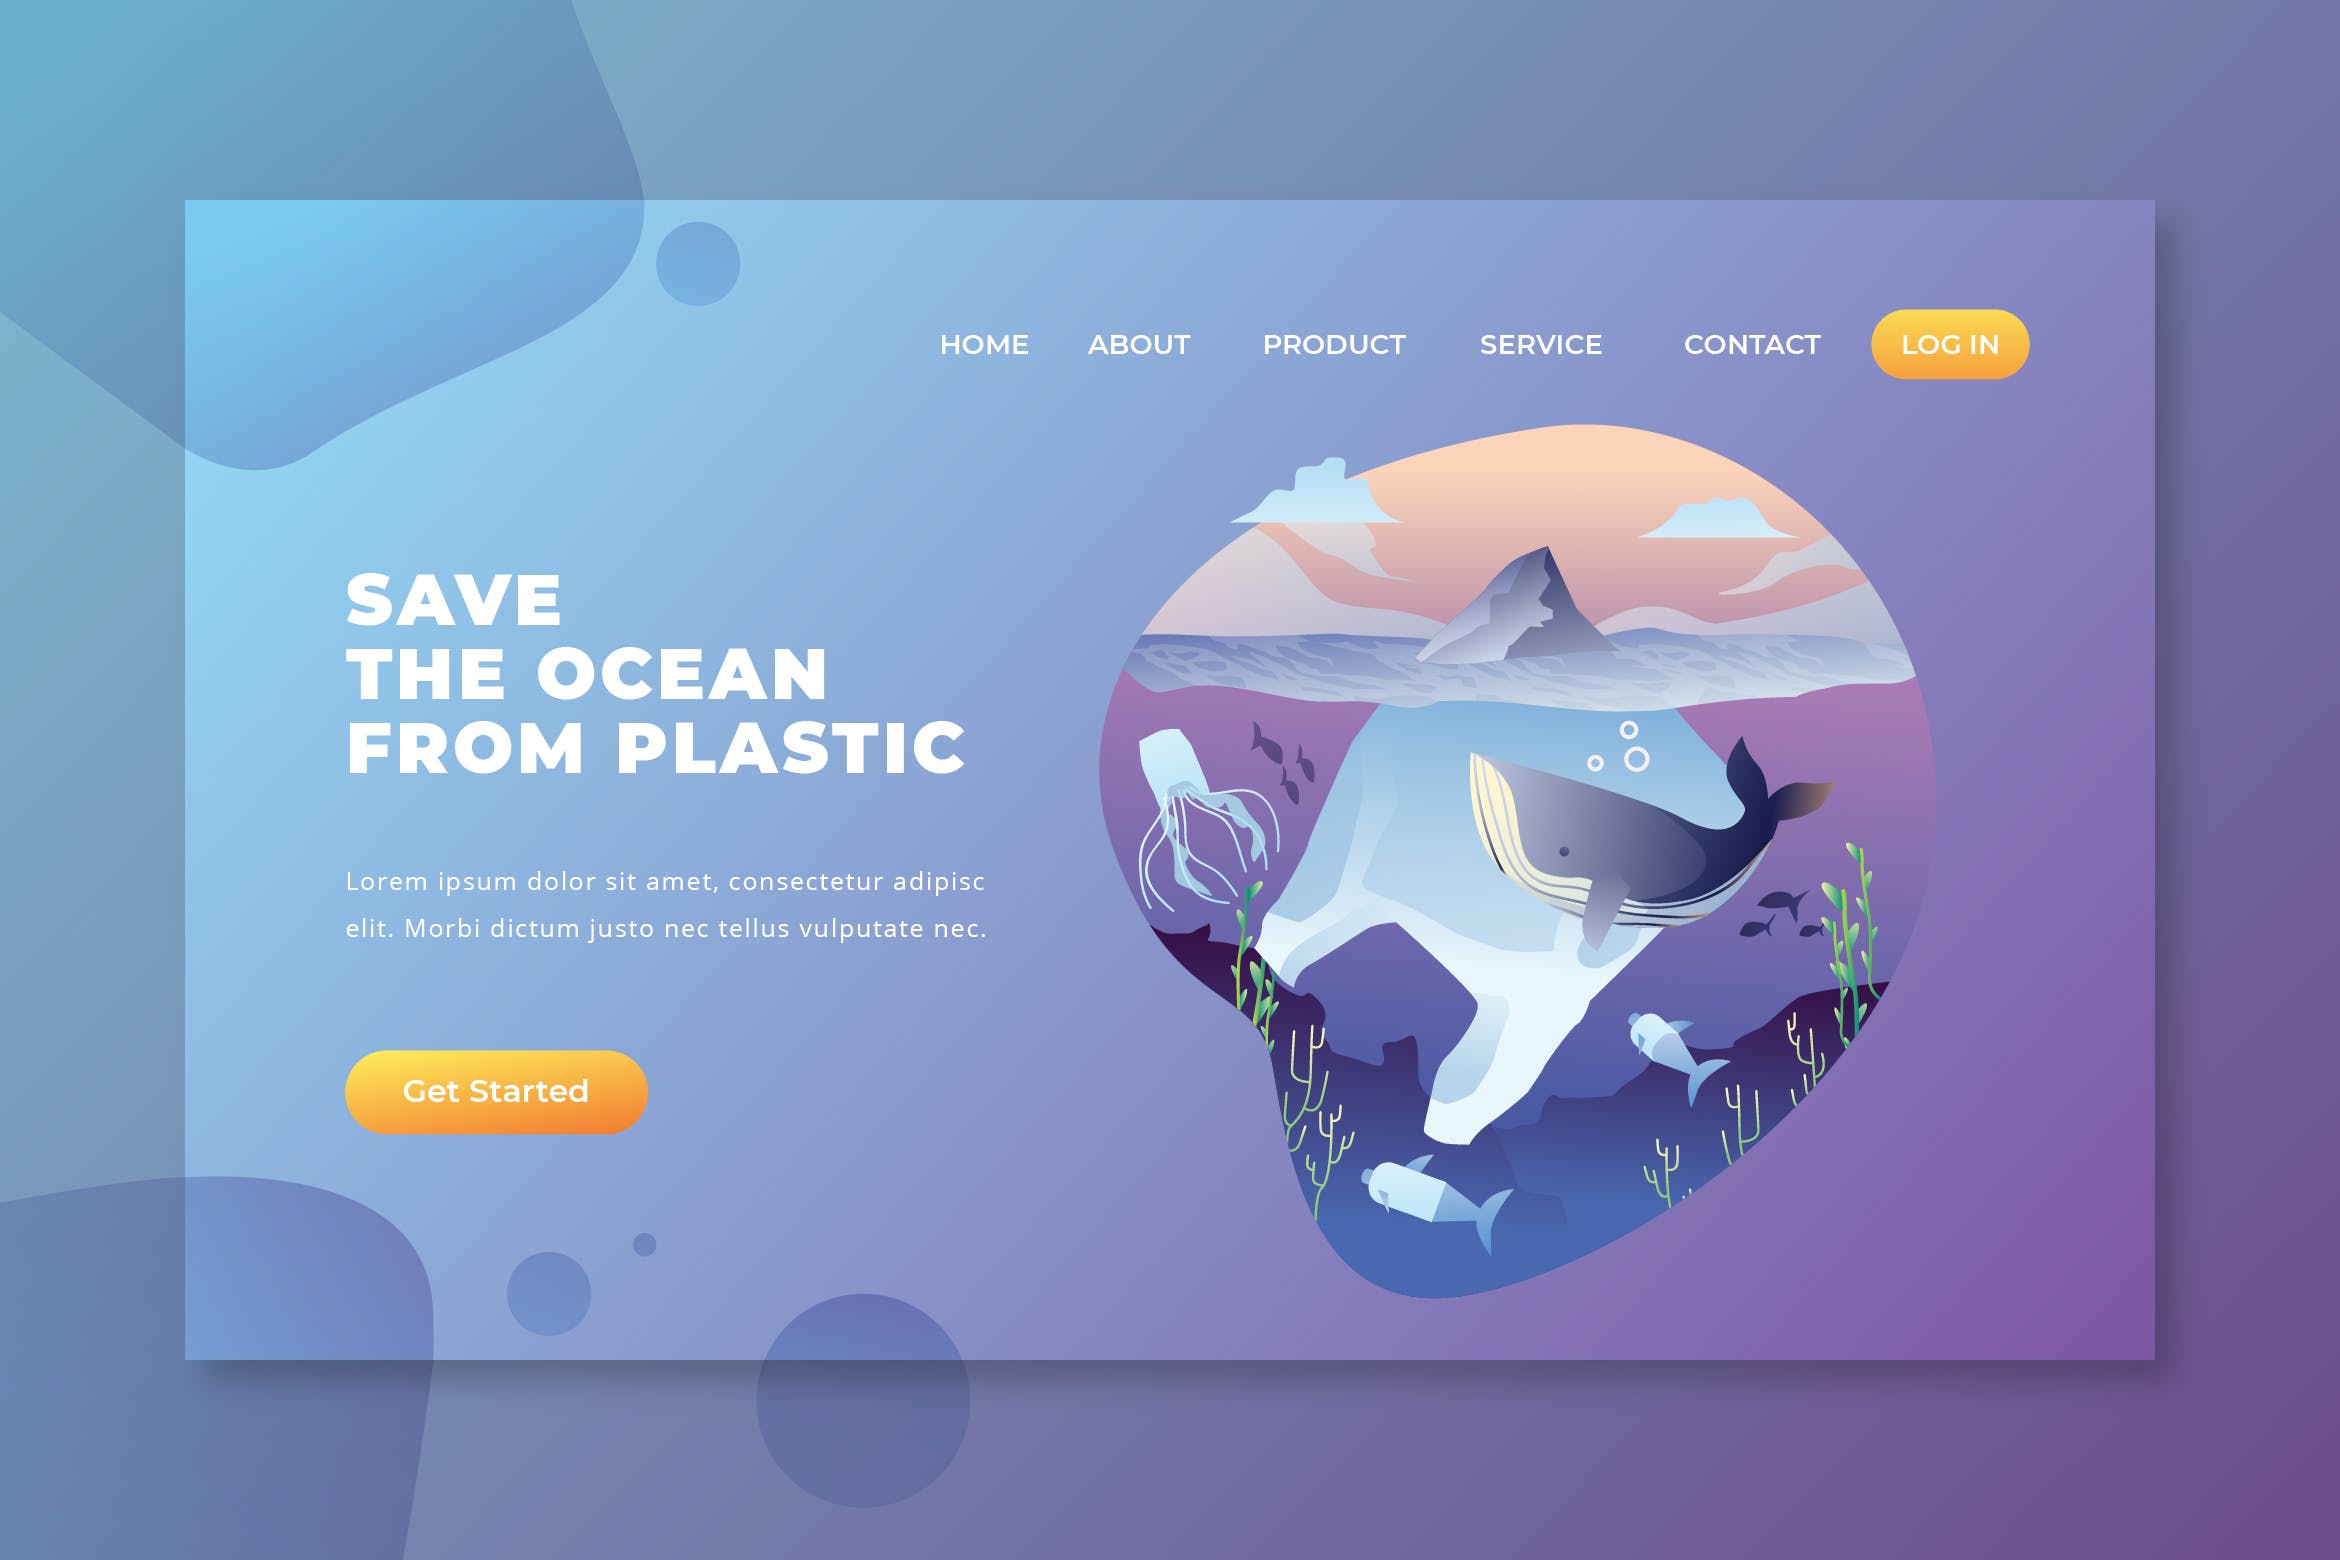 拒绝塑料污染拯救海洋主题矢量插画网站着陆页设计PSD&AI模板 Save The Ocean from Plastic – PSD AI Landing Page插图